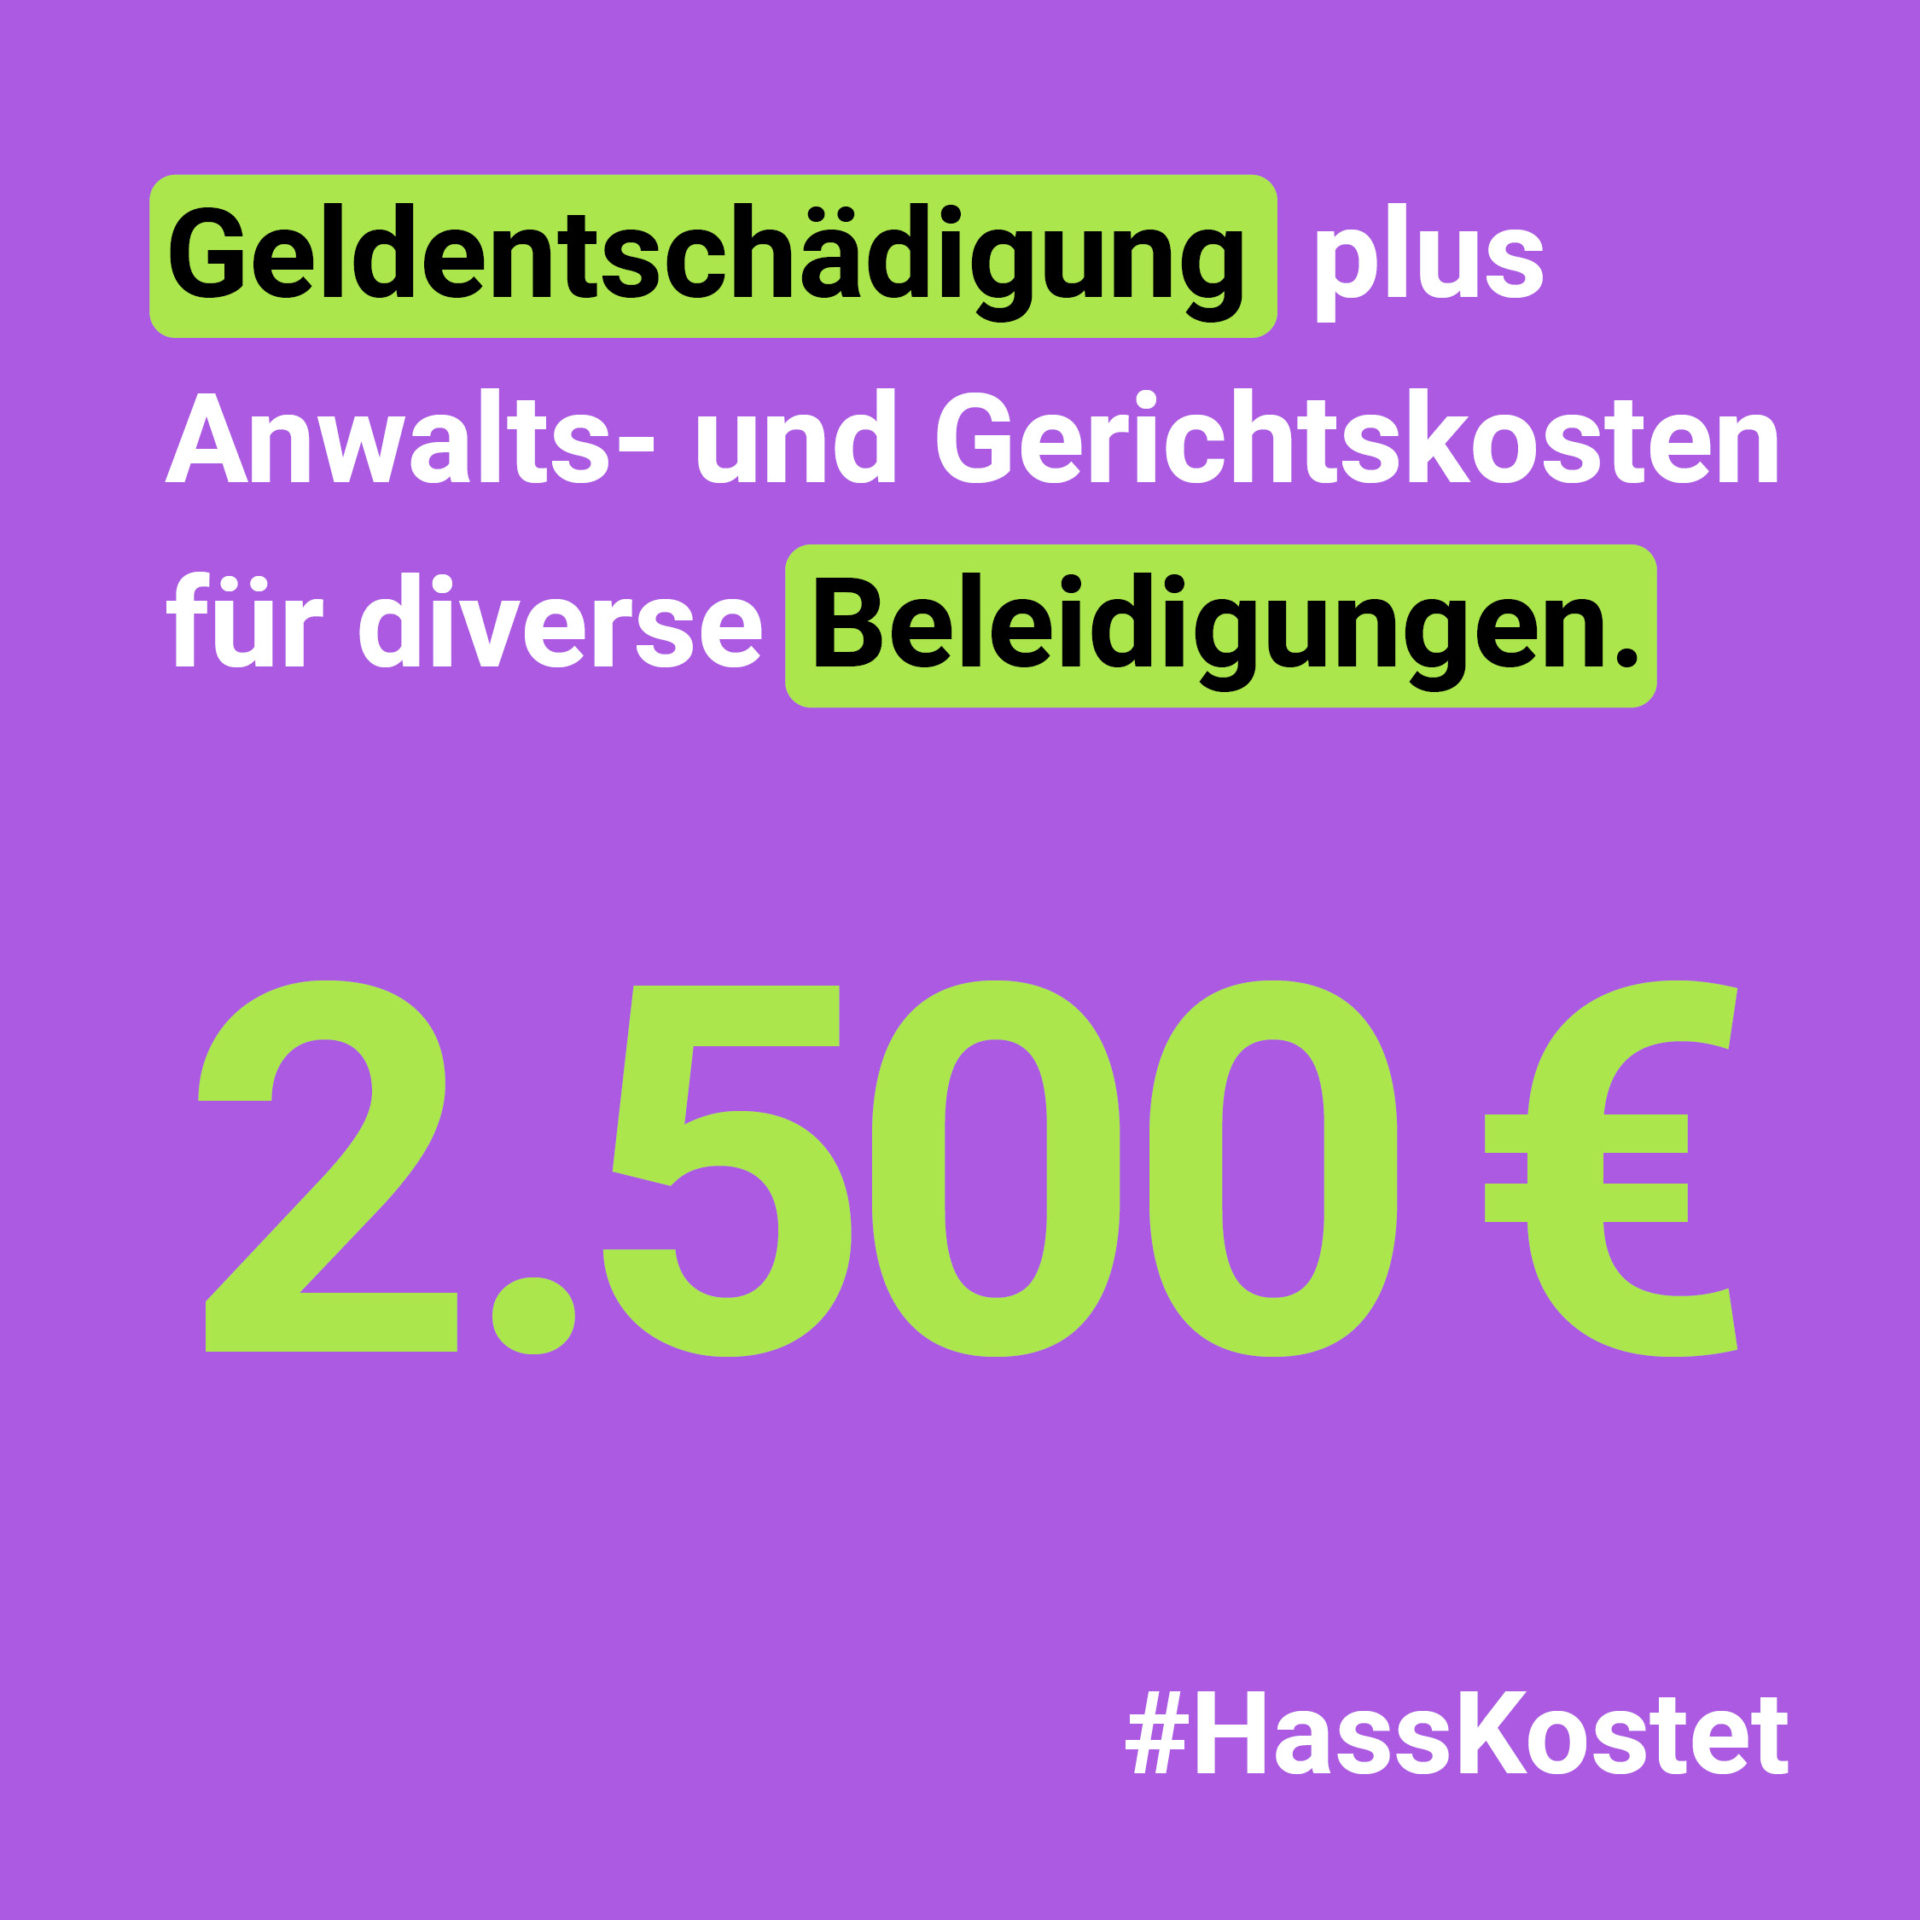 Grafik: Geldentschädigung plus Anwalts- und Gerichtskosten für diverse Beleidigungen. 2500€ #HassKostet